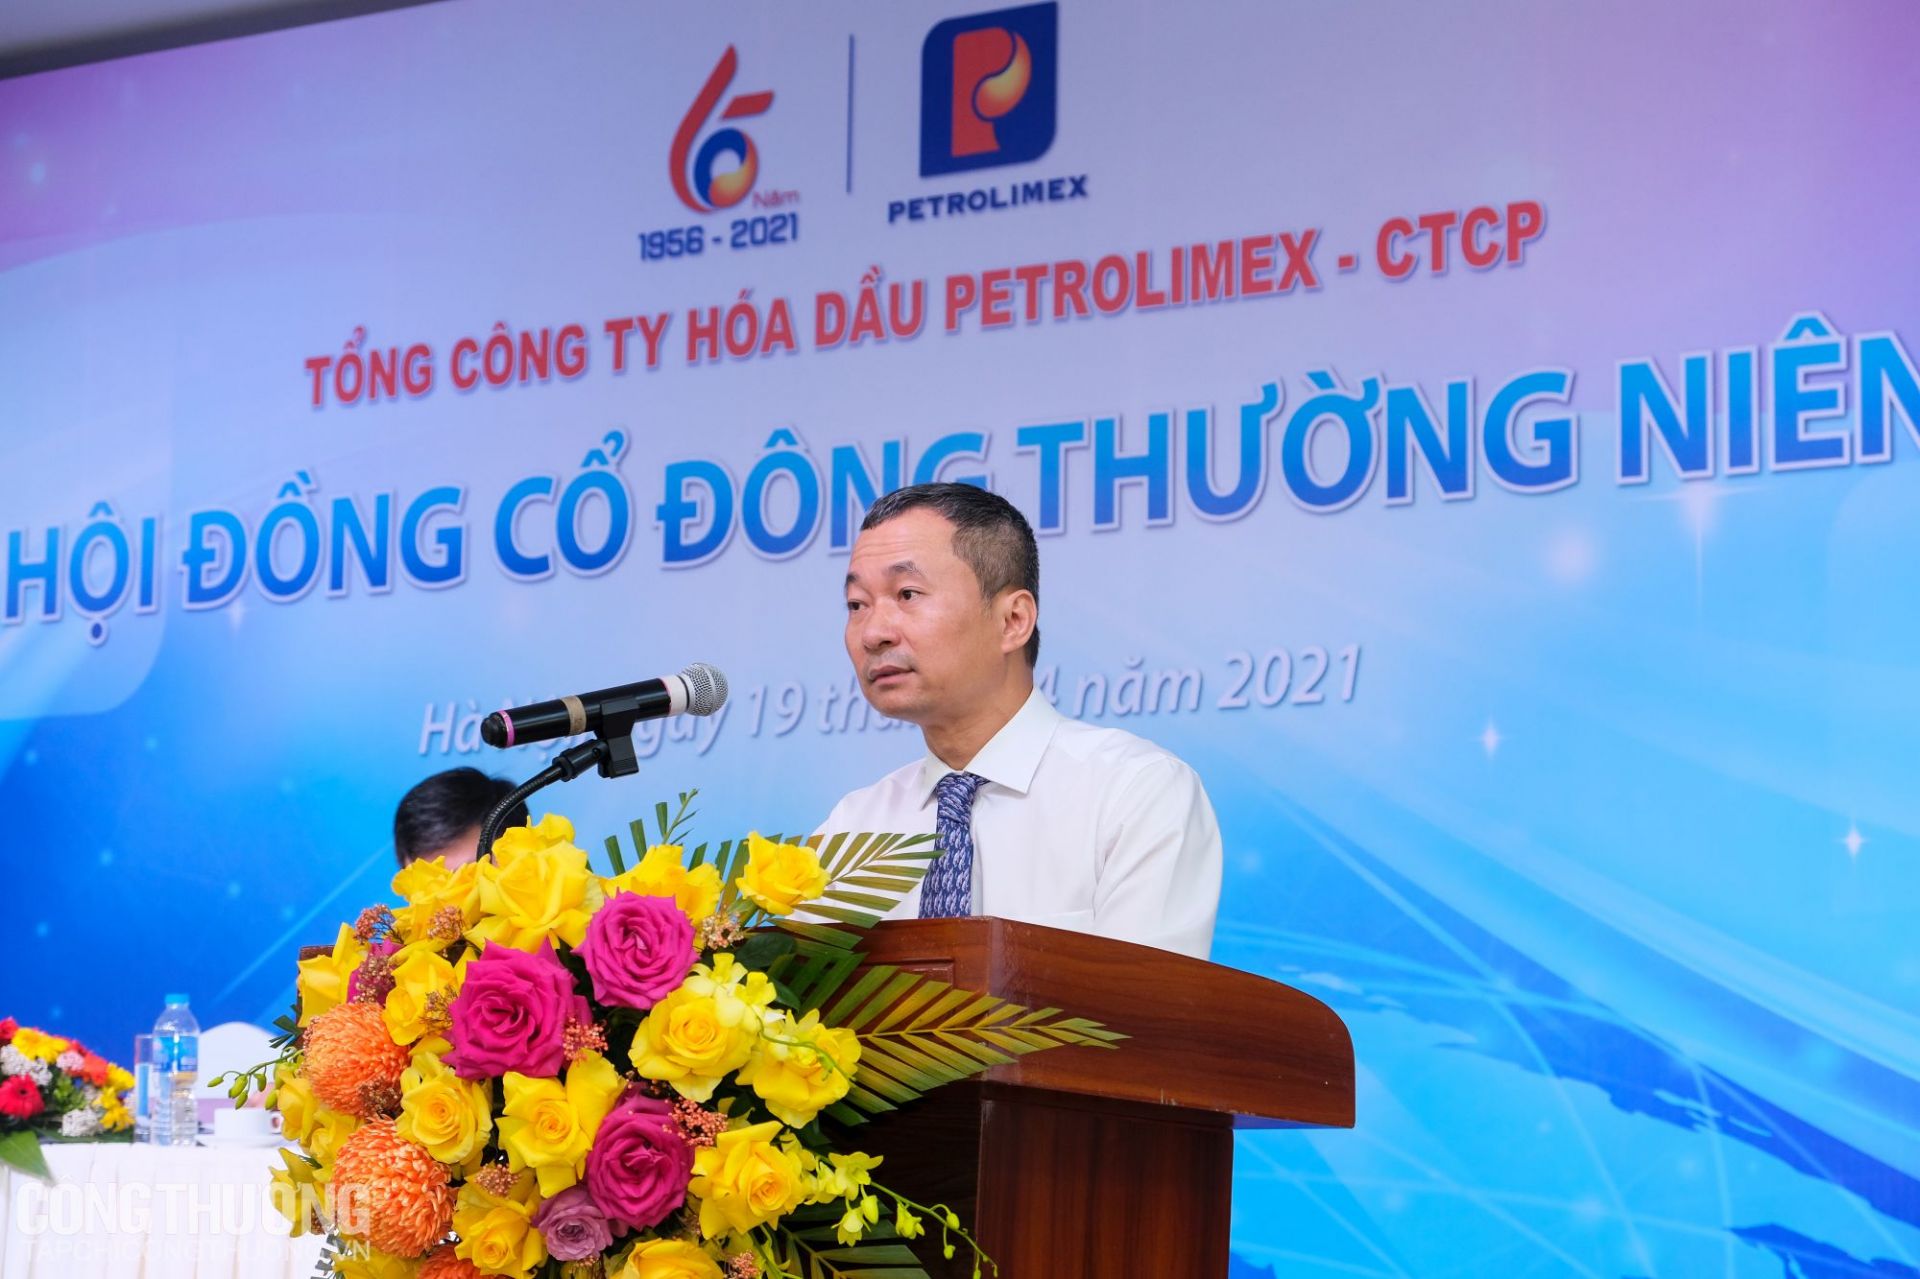 Ông Lê Quang Tuấn - Thành viên HĐQT, Tổng Giám đốc Tổng Công ty Hóa dầu Petrolimex